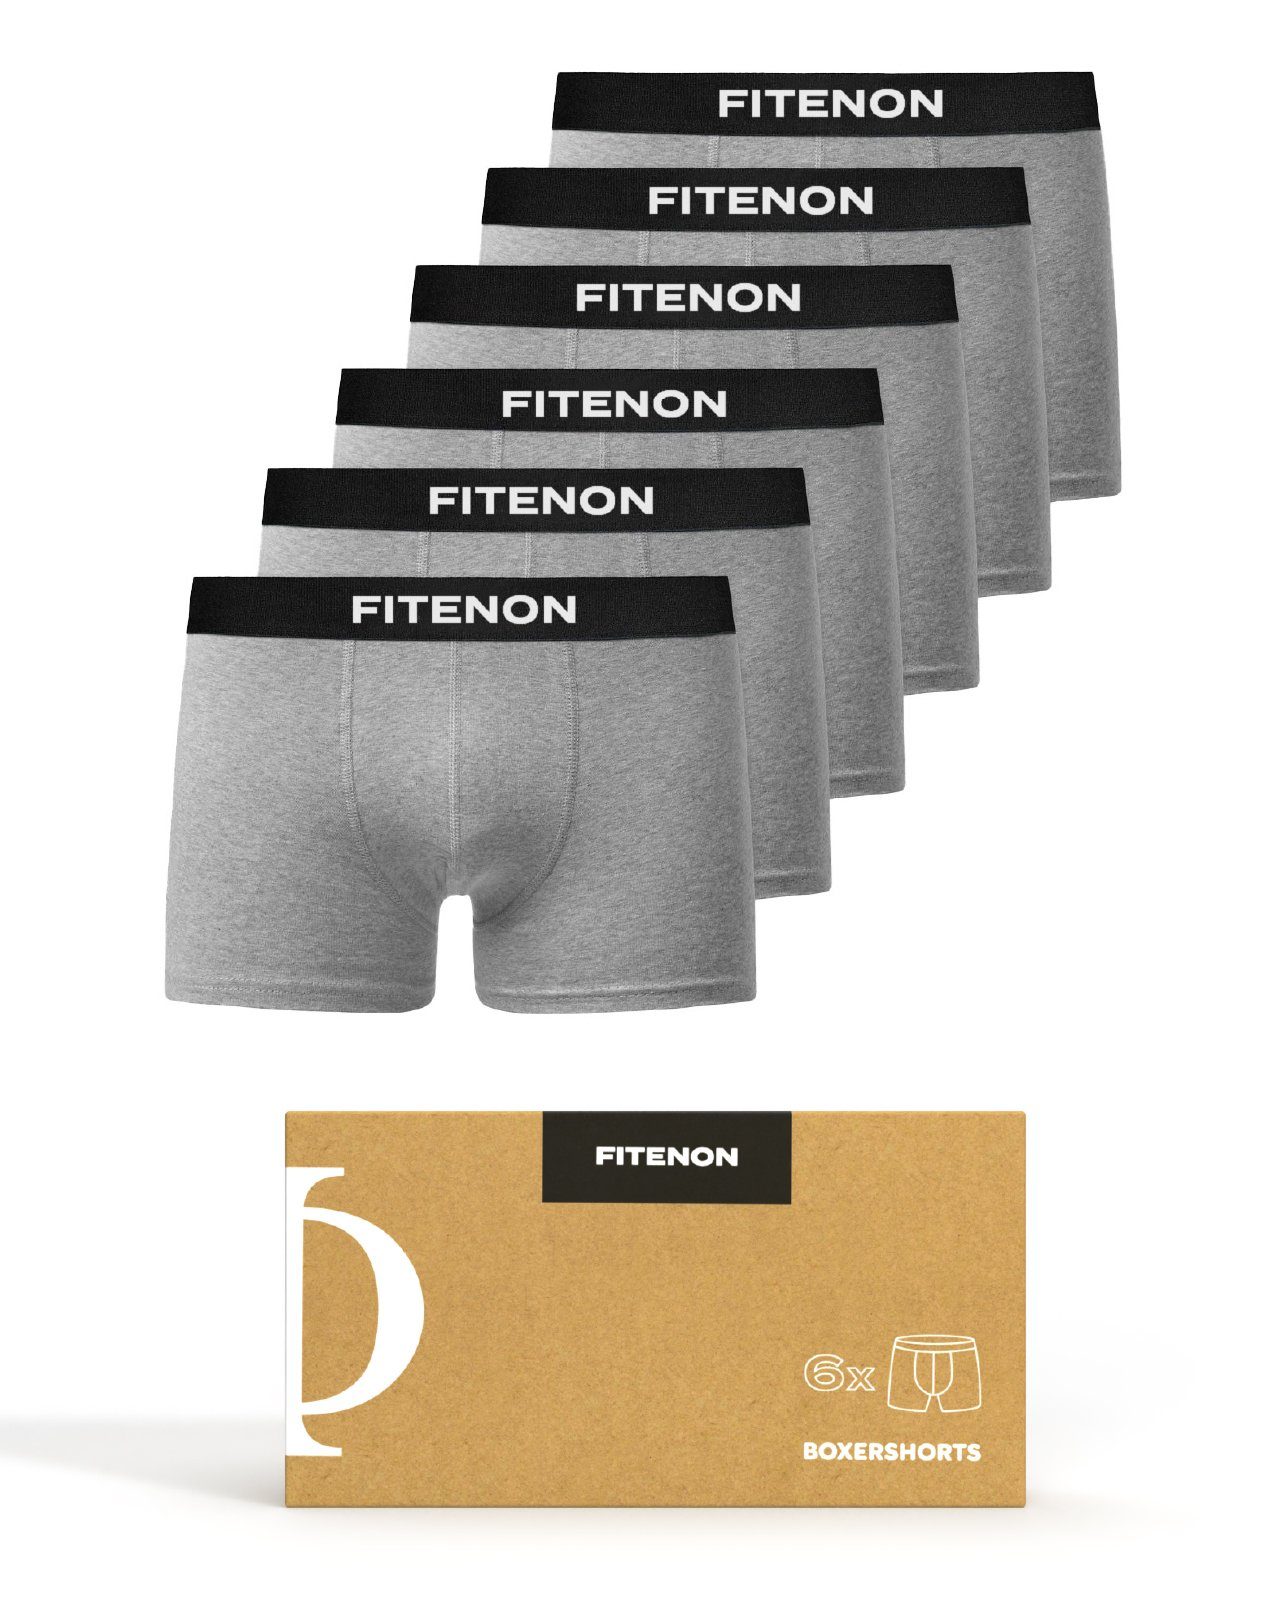 FITENON Boxershorts Herren Unterhosen, Unterwäsche, ohne kratzenden Zettel, Baumwolle (6 er Set) mit Logo-Elastikbund 6x Grau